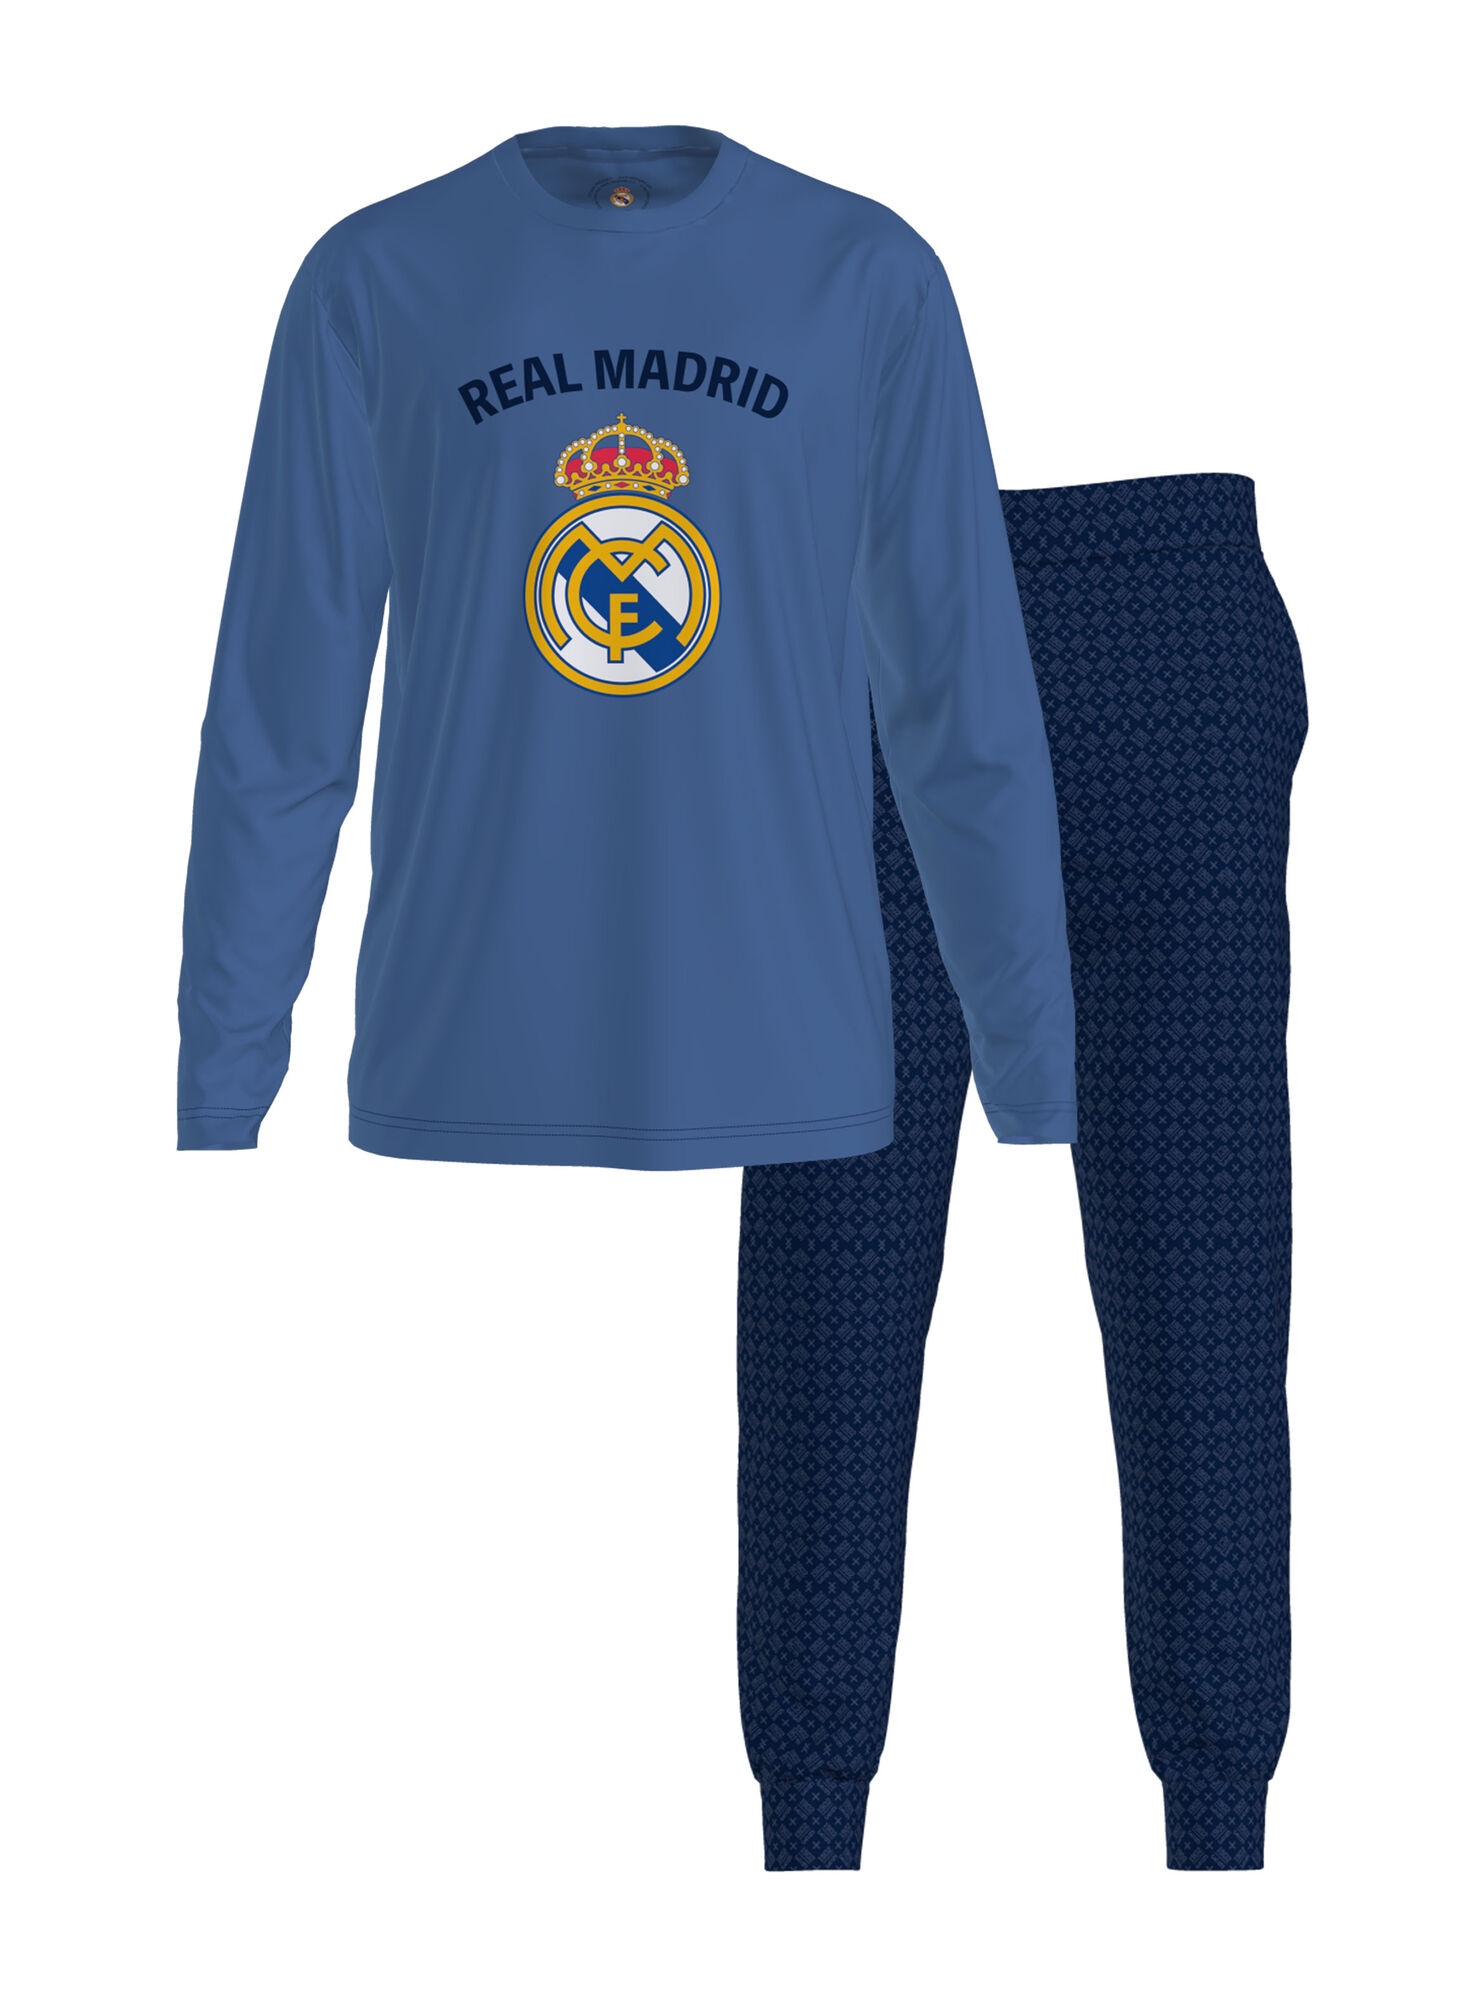 Real Madrid Pijama Junior Oficial Pijama Invieno Real Madrid Pijama Largo pamso.pl